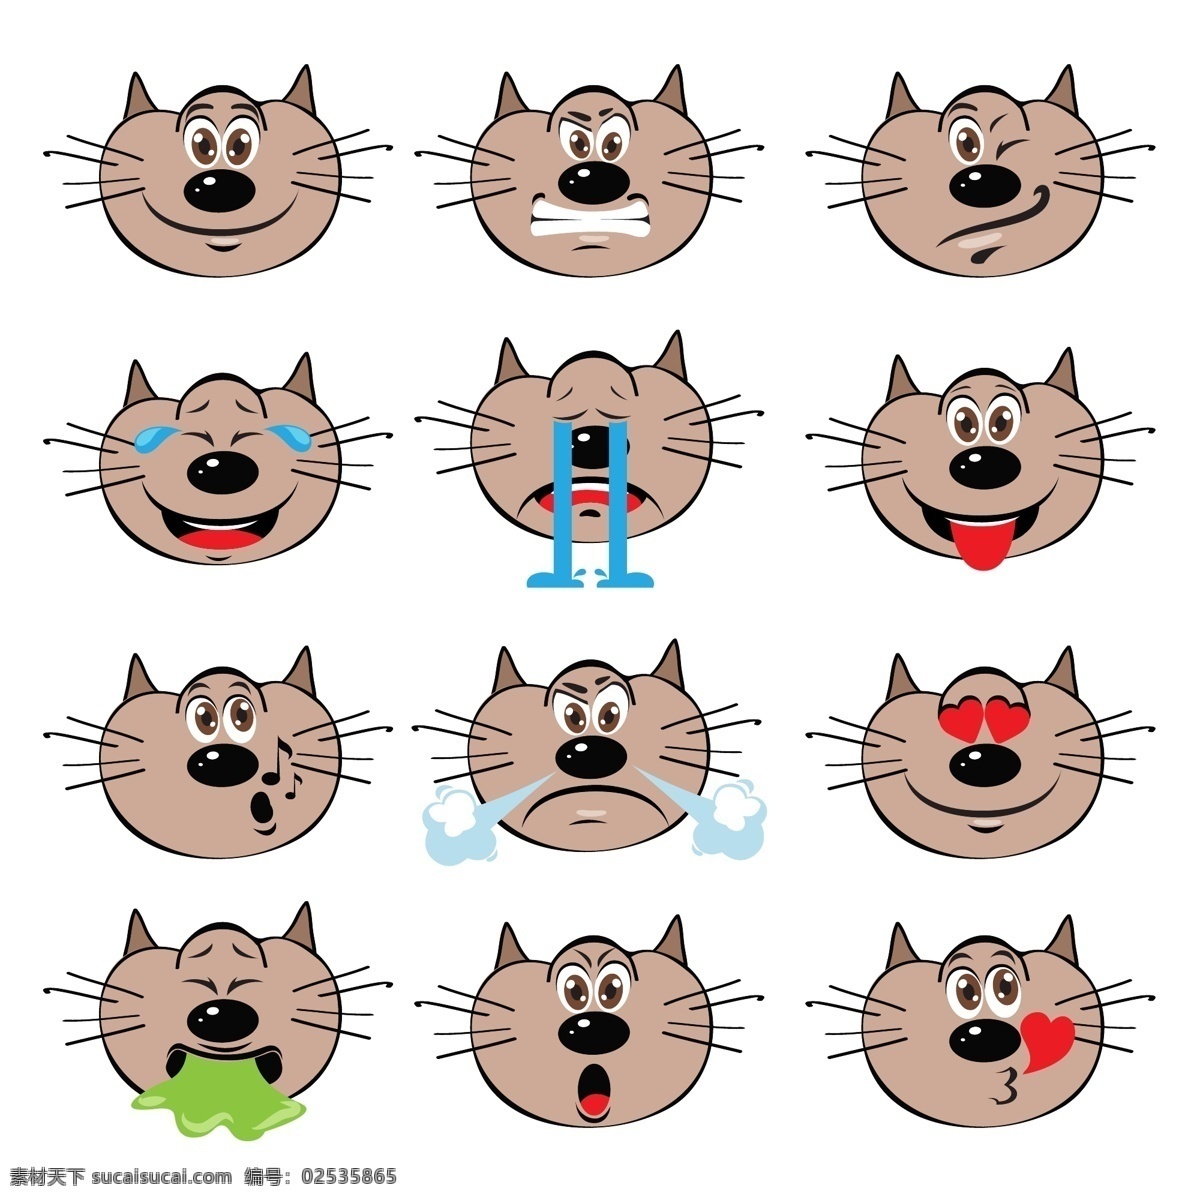 手绘的表情 猫 背景 人物 爱情 图标 脸谱网 卡通 脸 可爱 微笑 快乐 网络 动物 应用 有趣 whatsapp 搞笑 情感